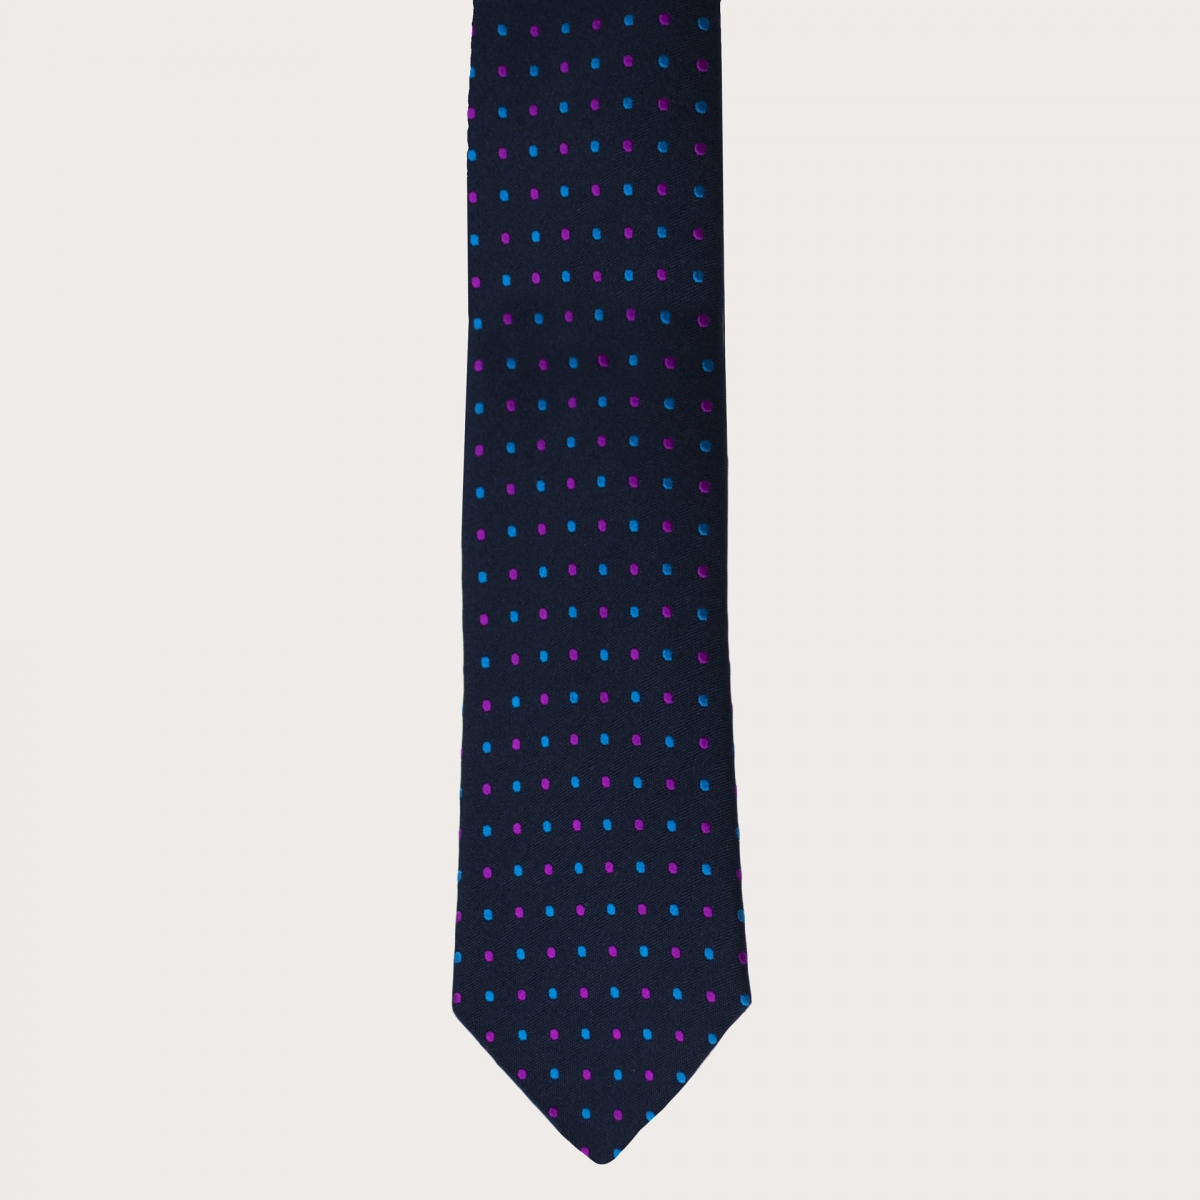 BRUCLE Elegante cravatta in seta e cotone con fantasia puntaspillo, blu navy, azzurro e fucsia